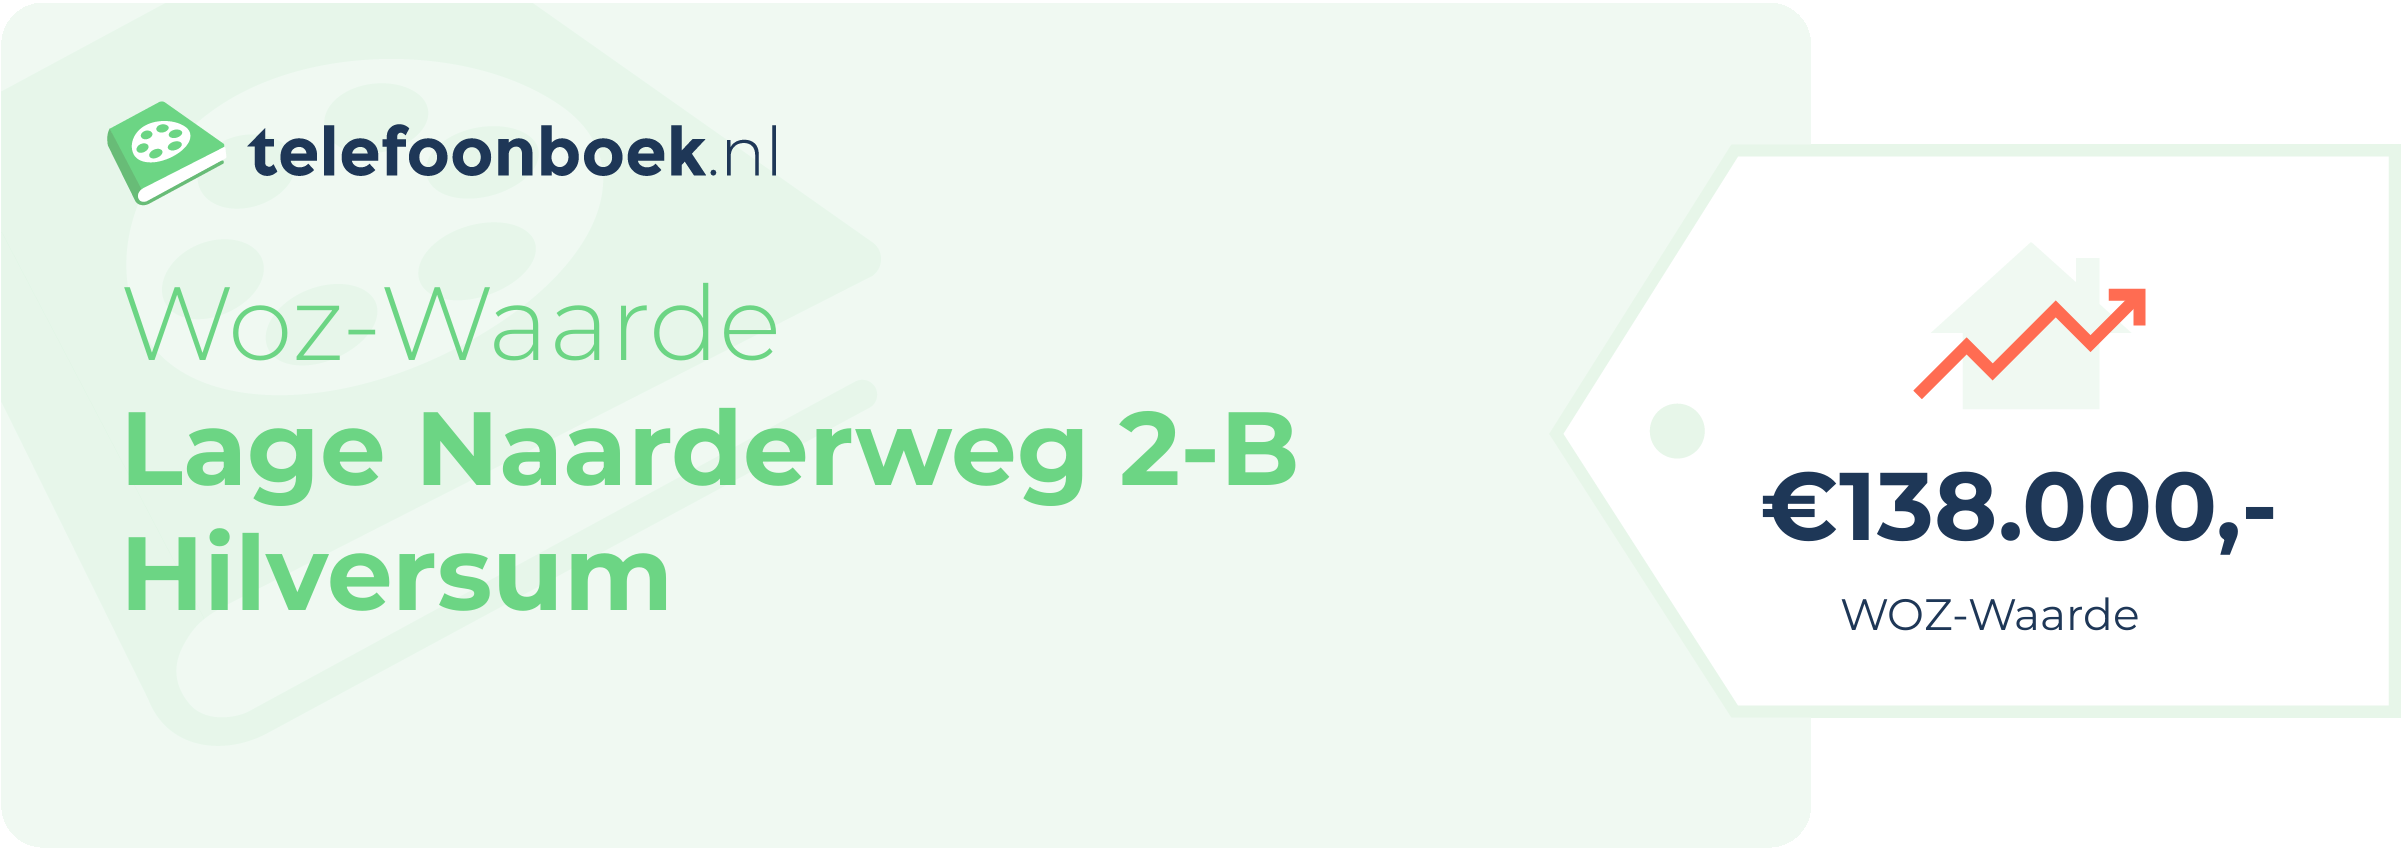 WOZ-waarde Lage Naarderweg 2-B Hilversum